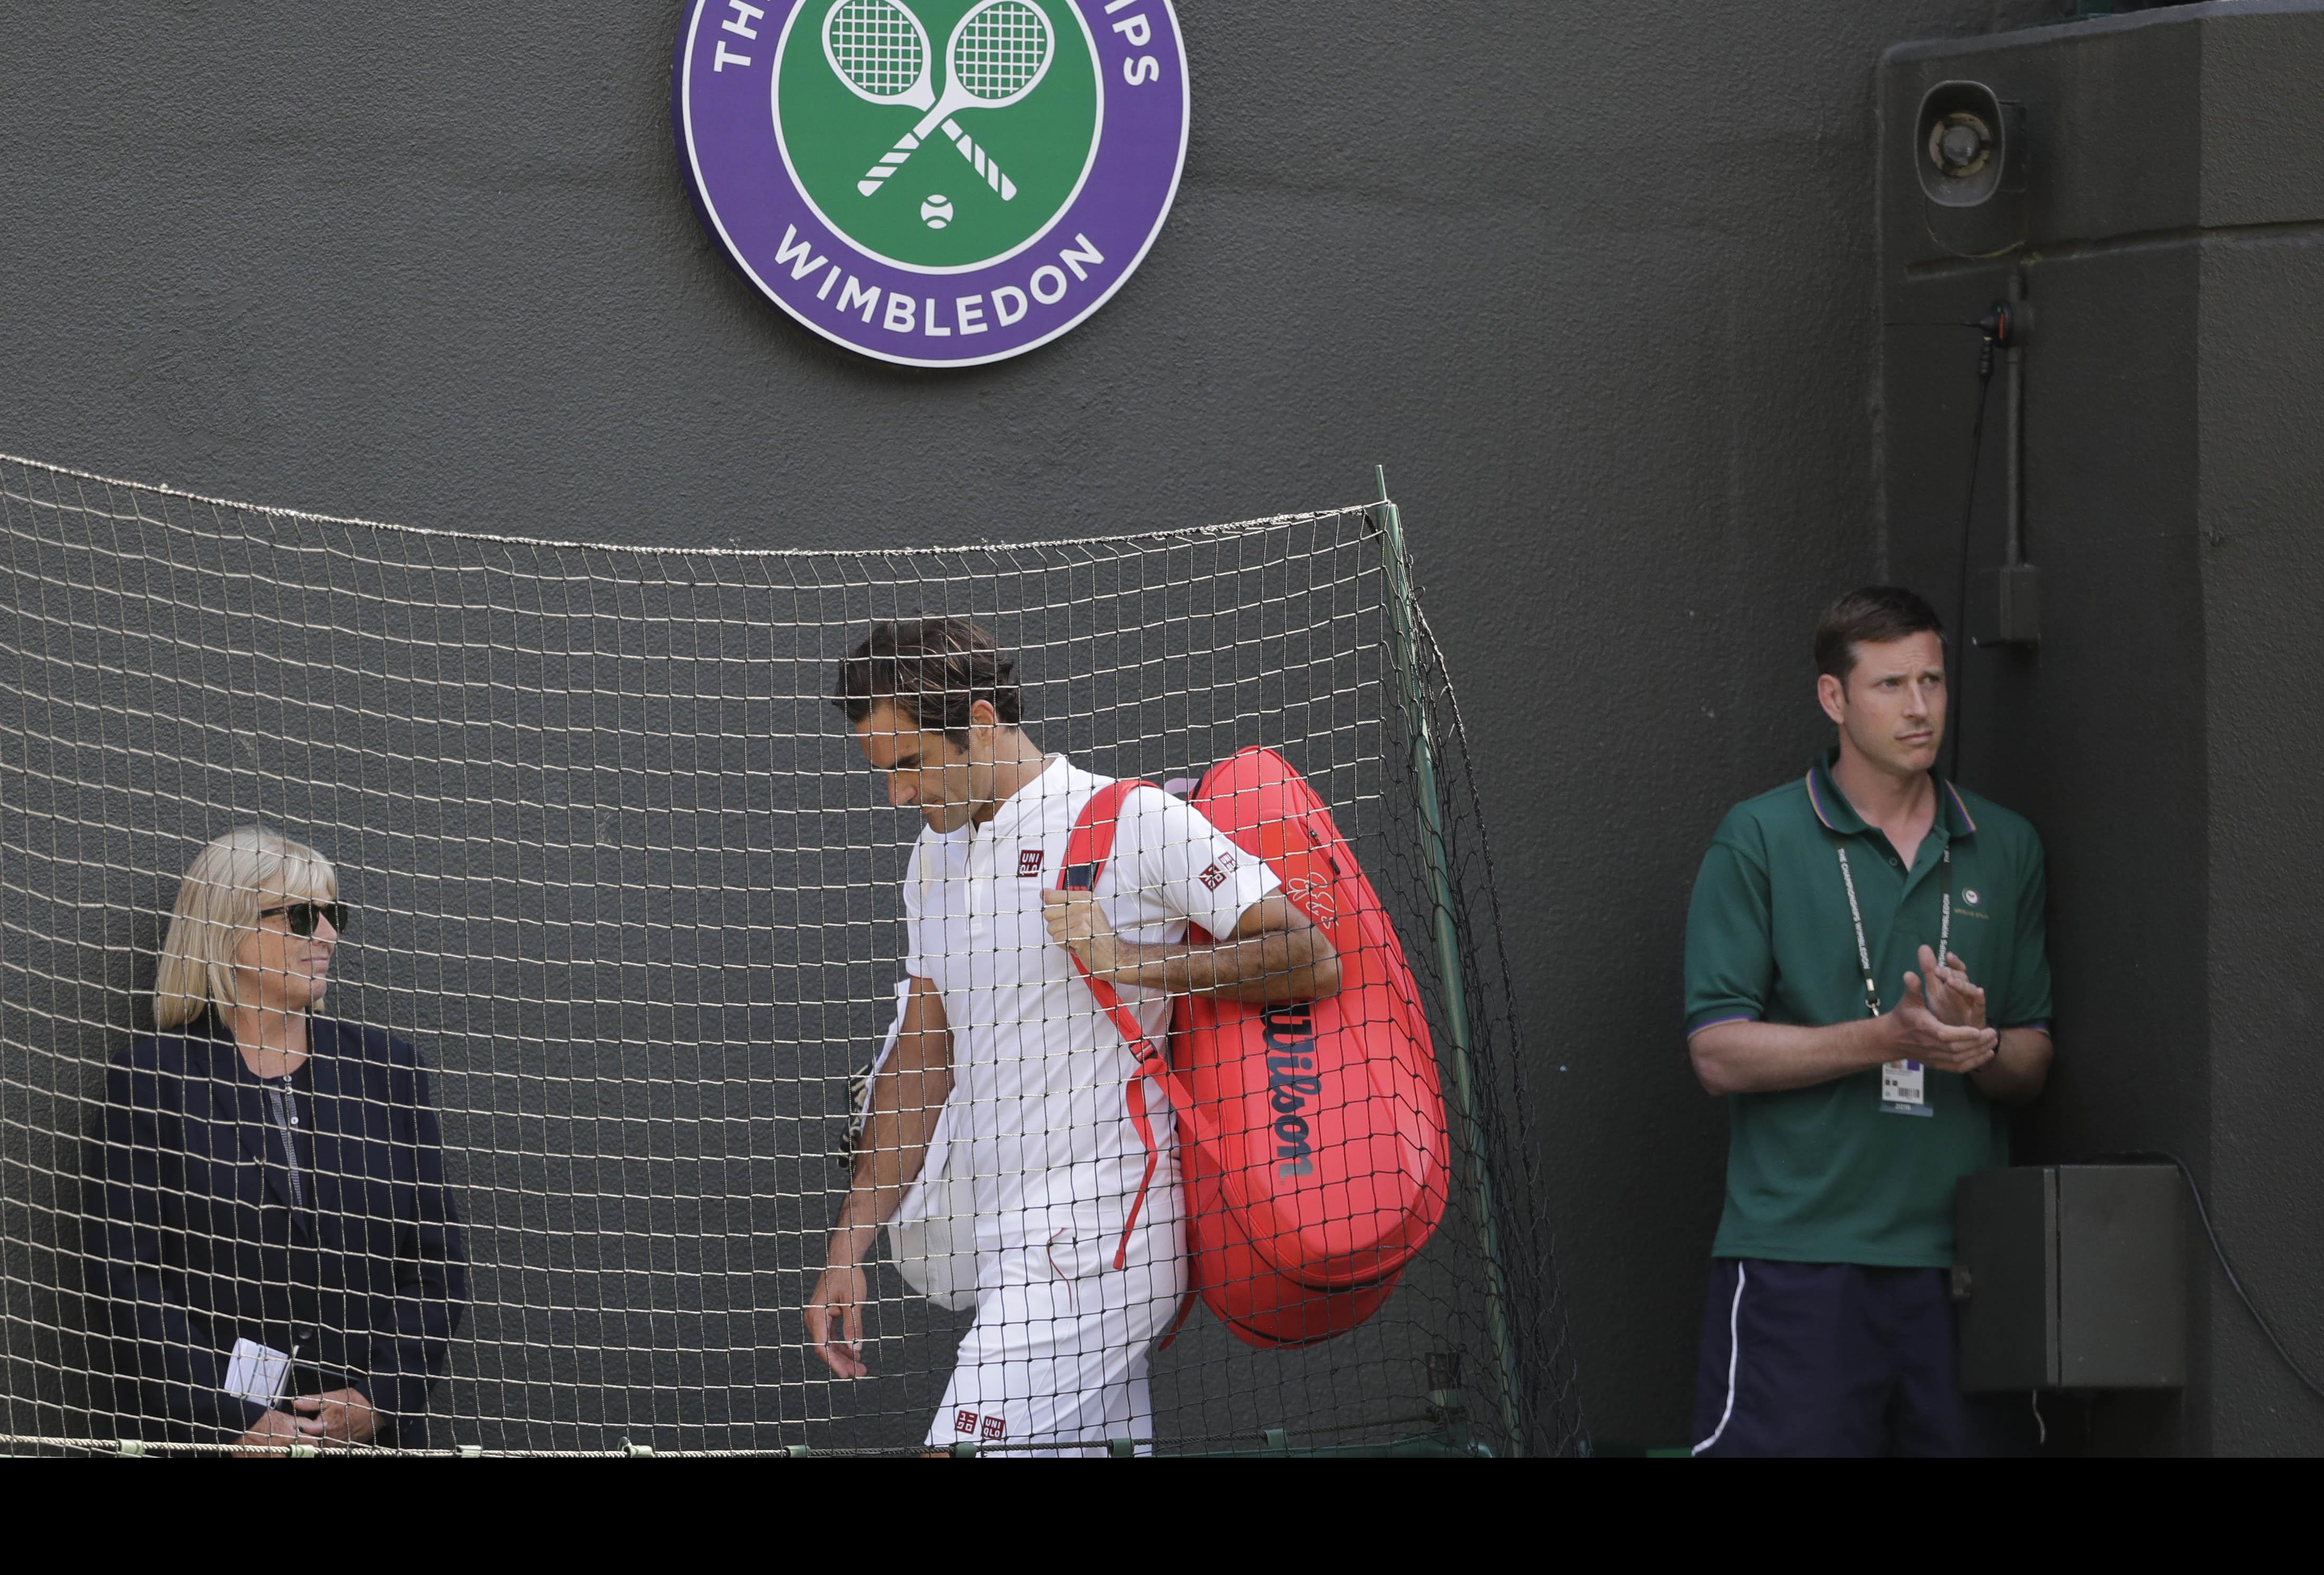 RODŽER OTKRIO DA JE PENZIJA NIKAD BLIŽA! Federer: Biće zanimljivo i posle tenisa!